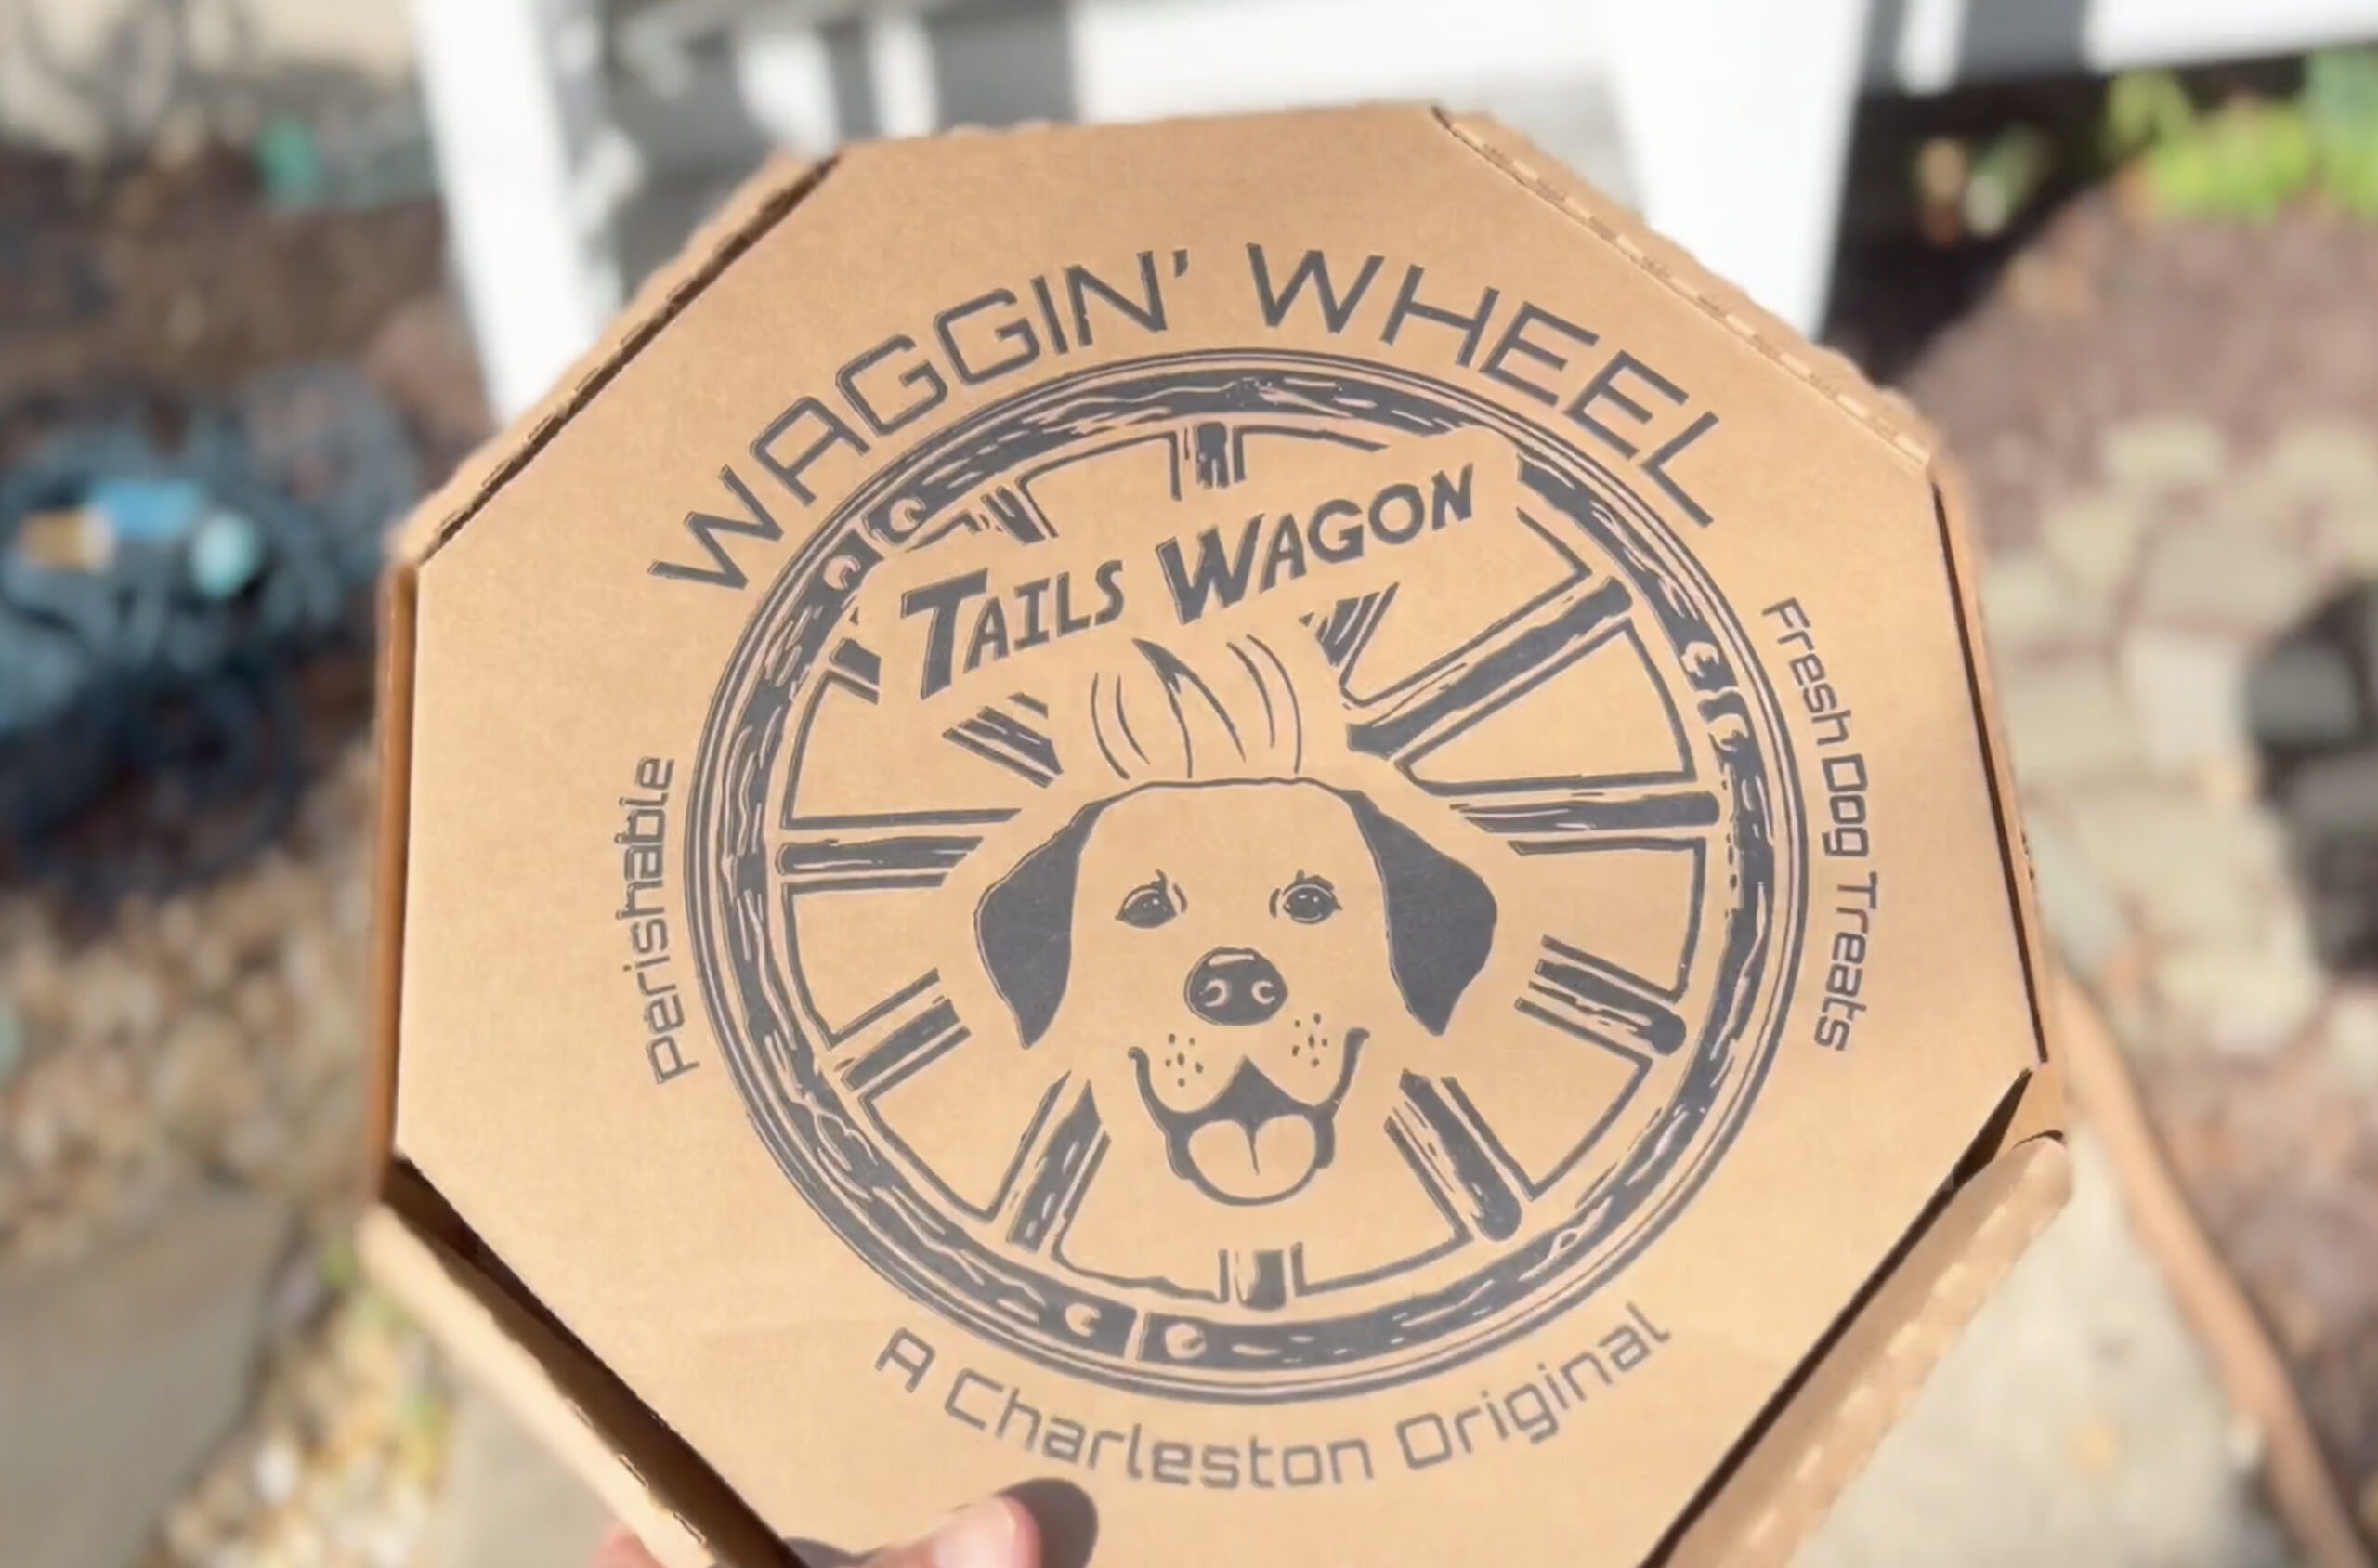 Waggin Wheel Delivery Box